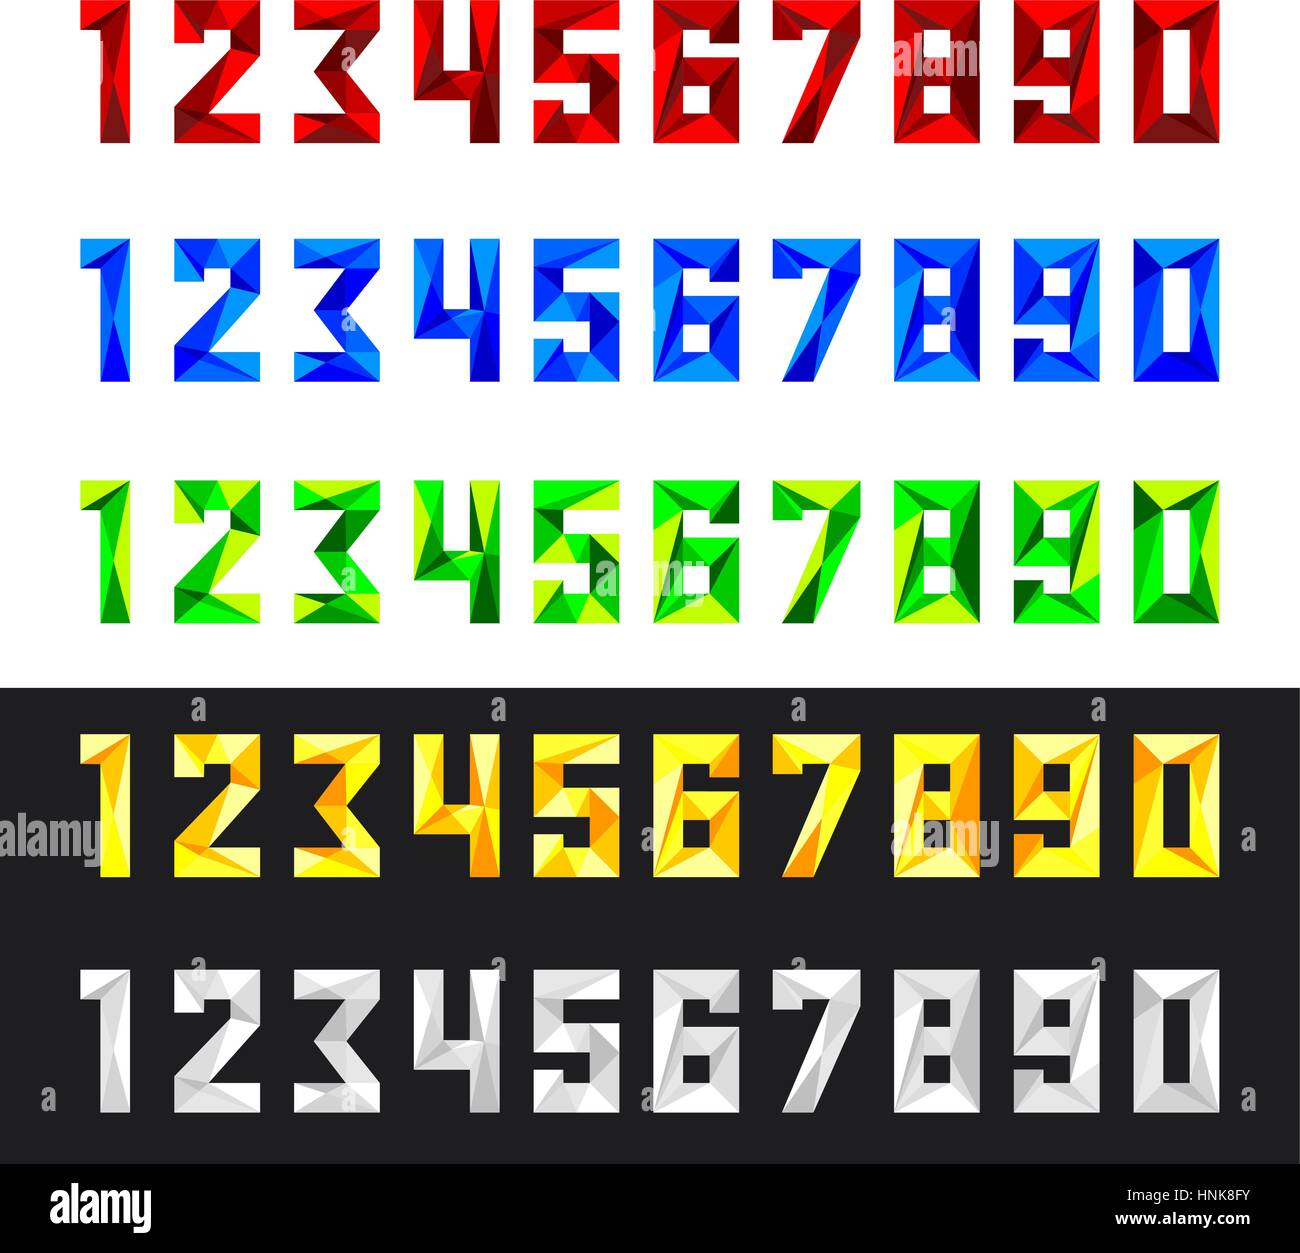 Les figures 1, 2, 3, 4, 5, 6, 7, 8, 9, 0 en format vectoriel. Ensemble de chiffres de 0 à 9 dans le style polygonal. Chiffre en cinq couleurs - rouge, bleu, vert, Illustration de Vecteur